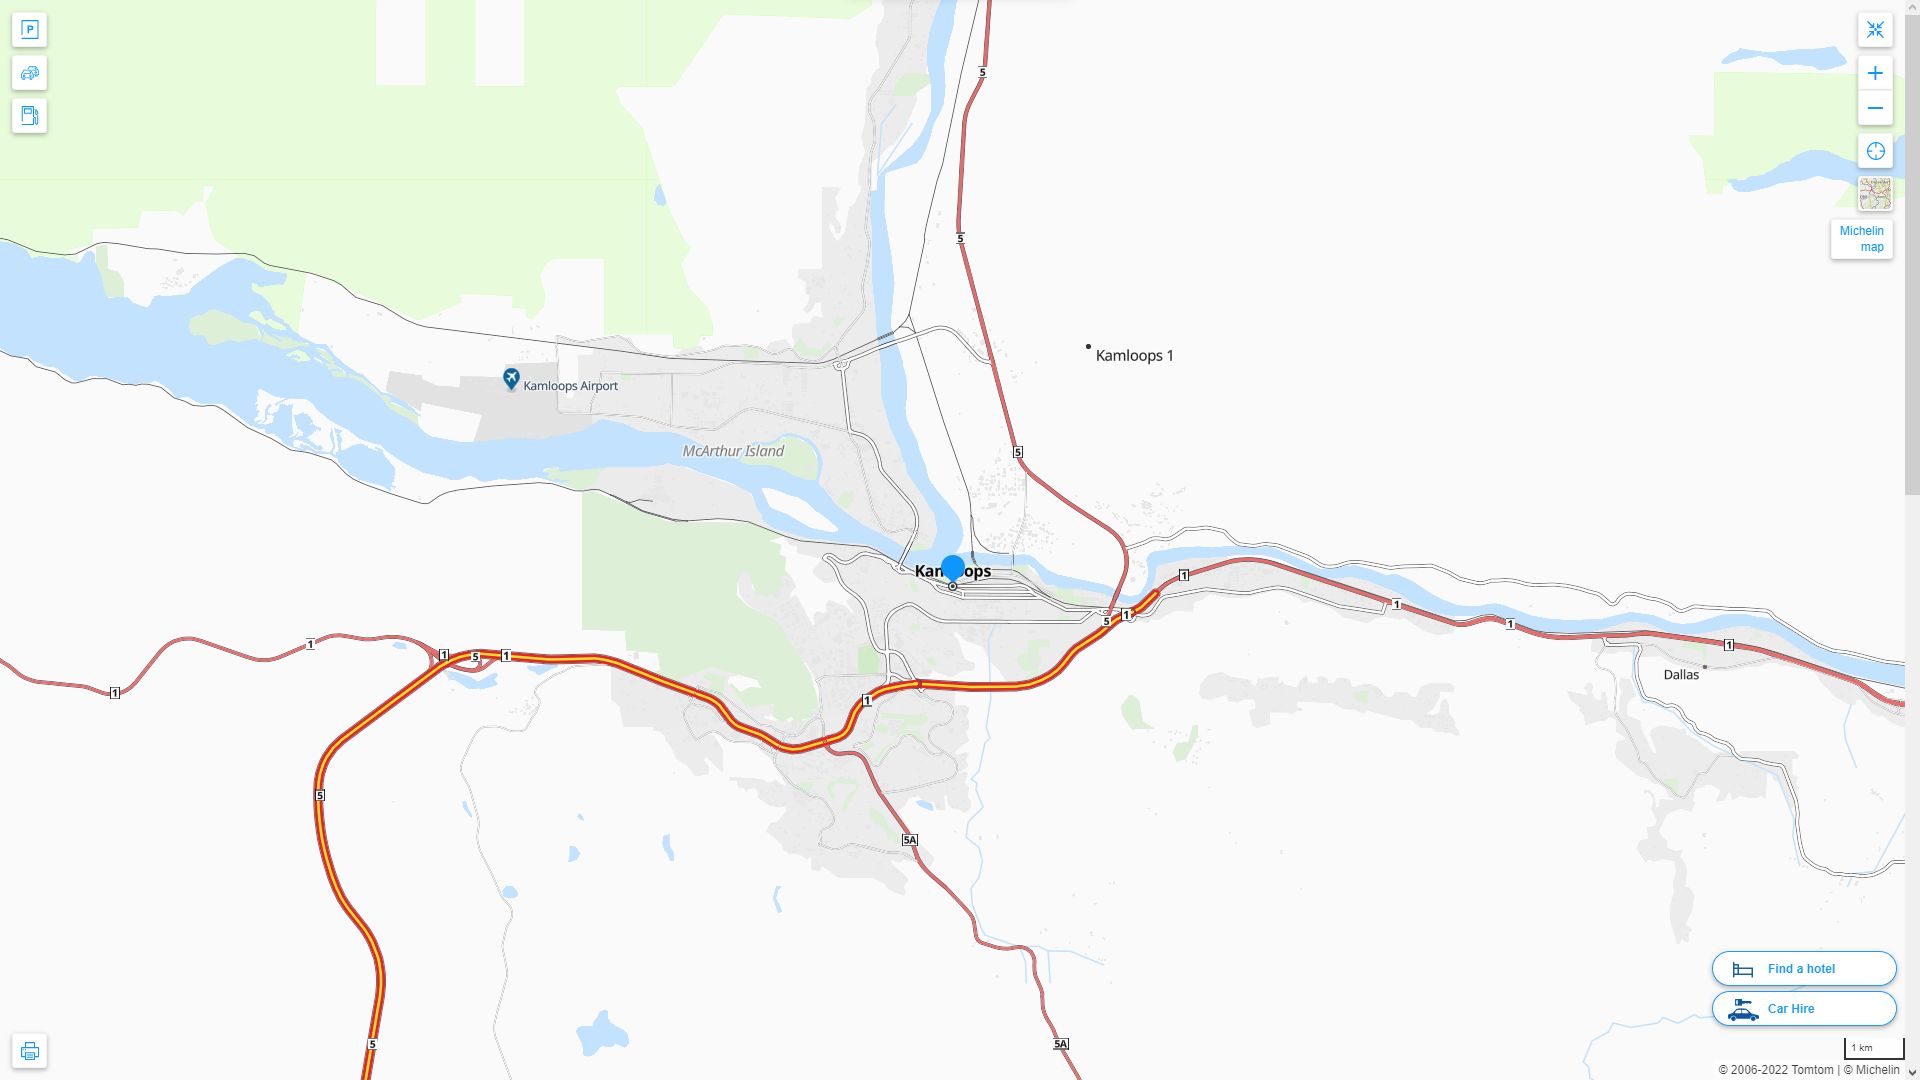 Kamloops Highway and Road Map